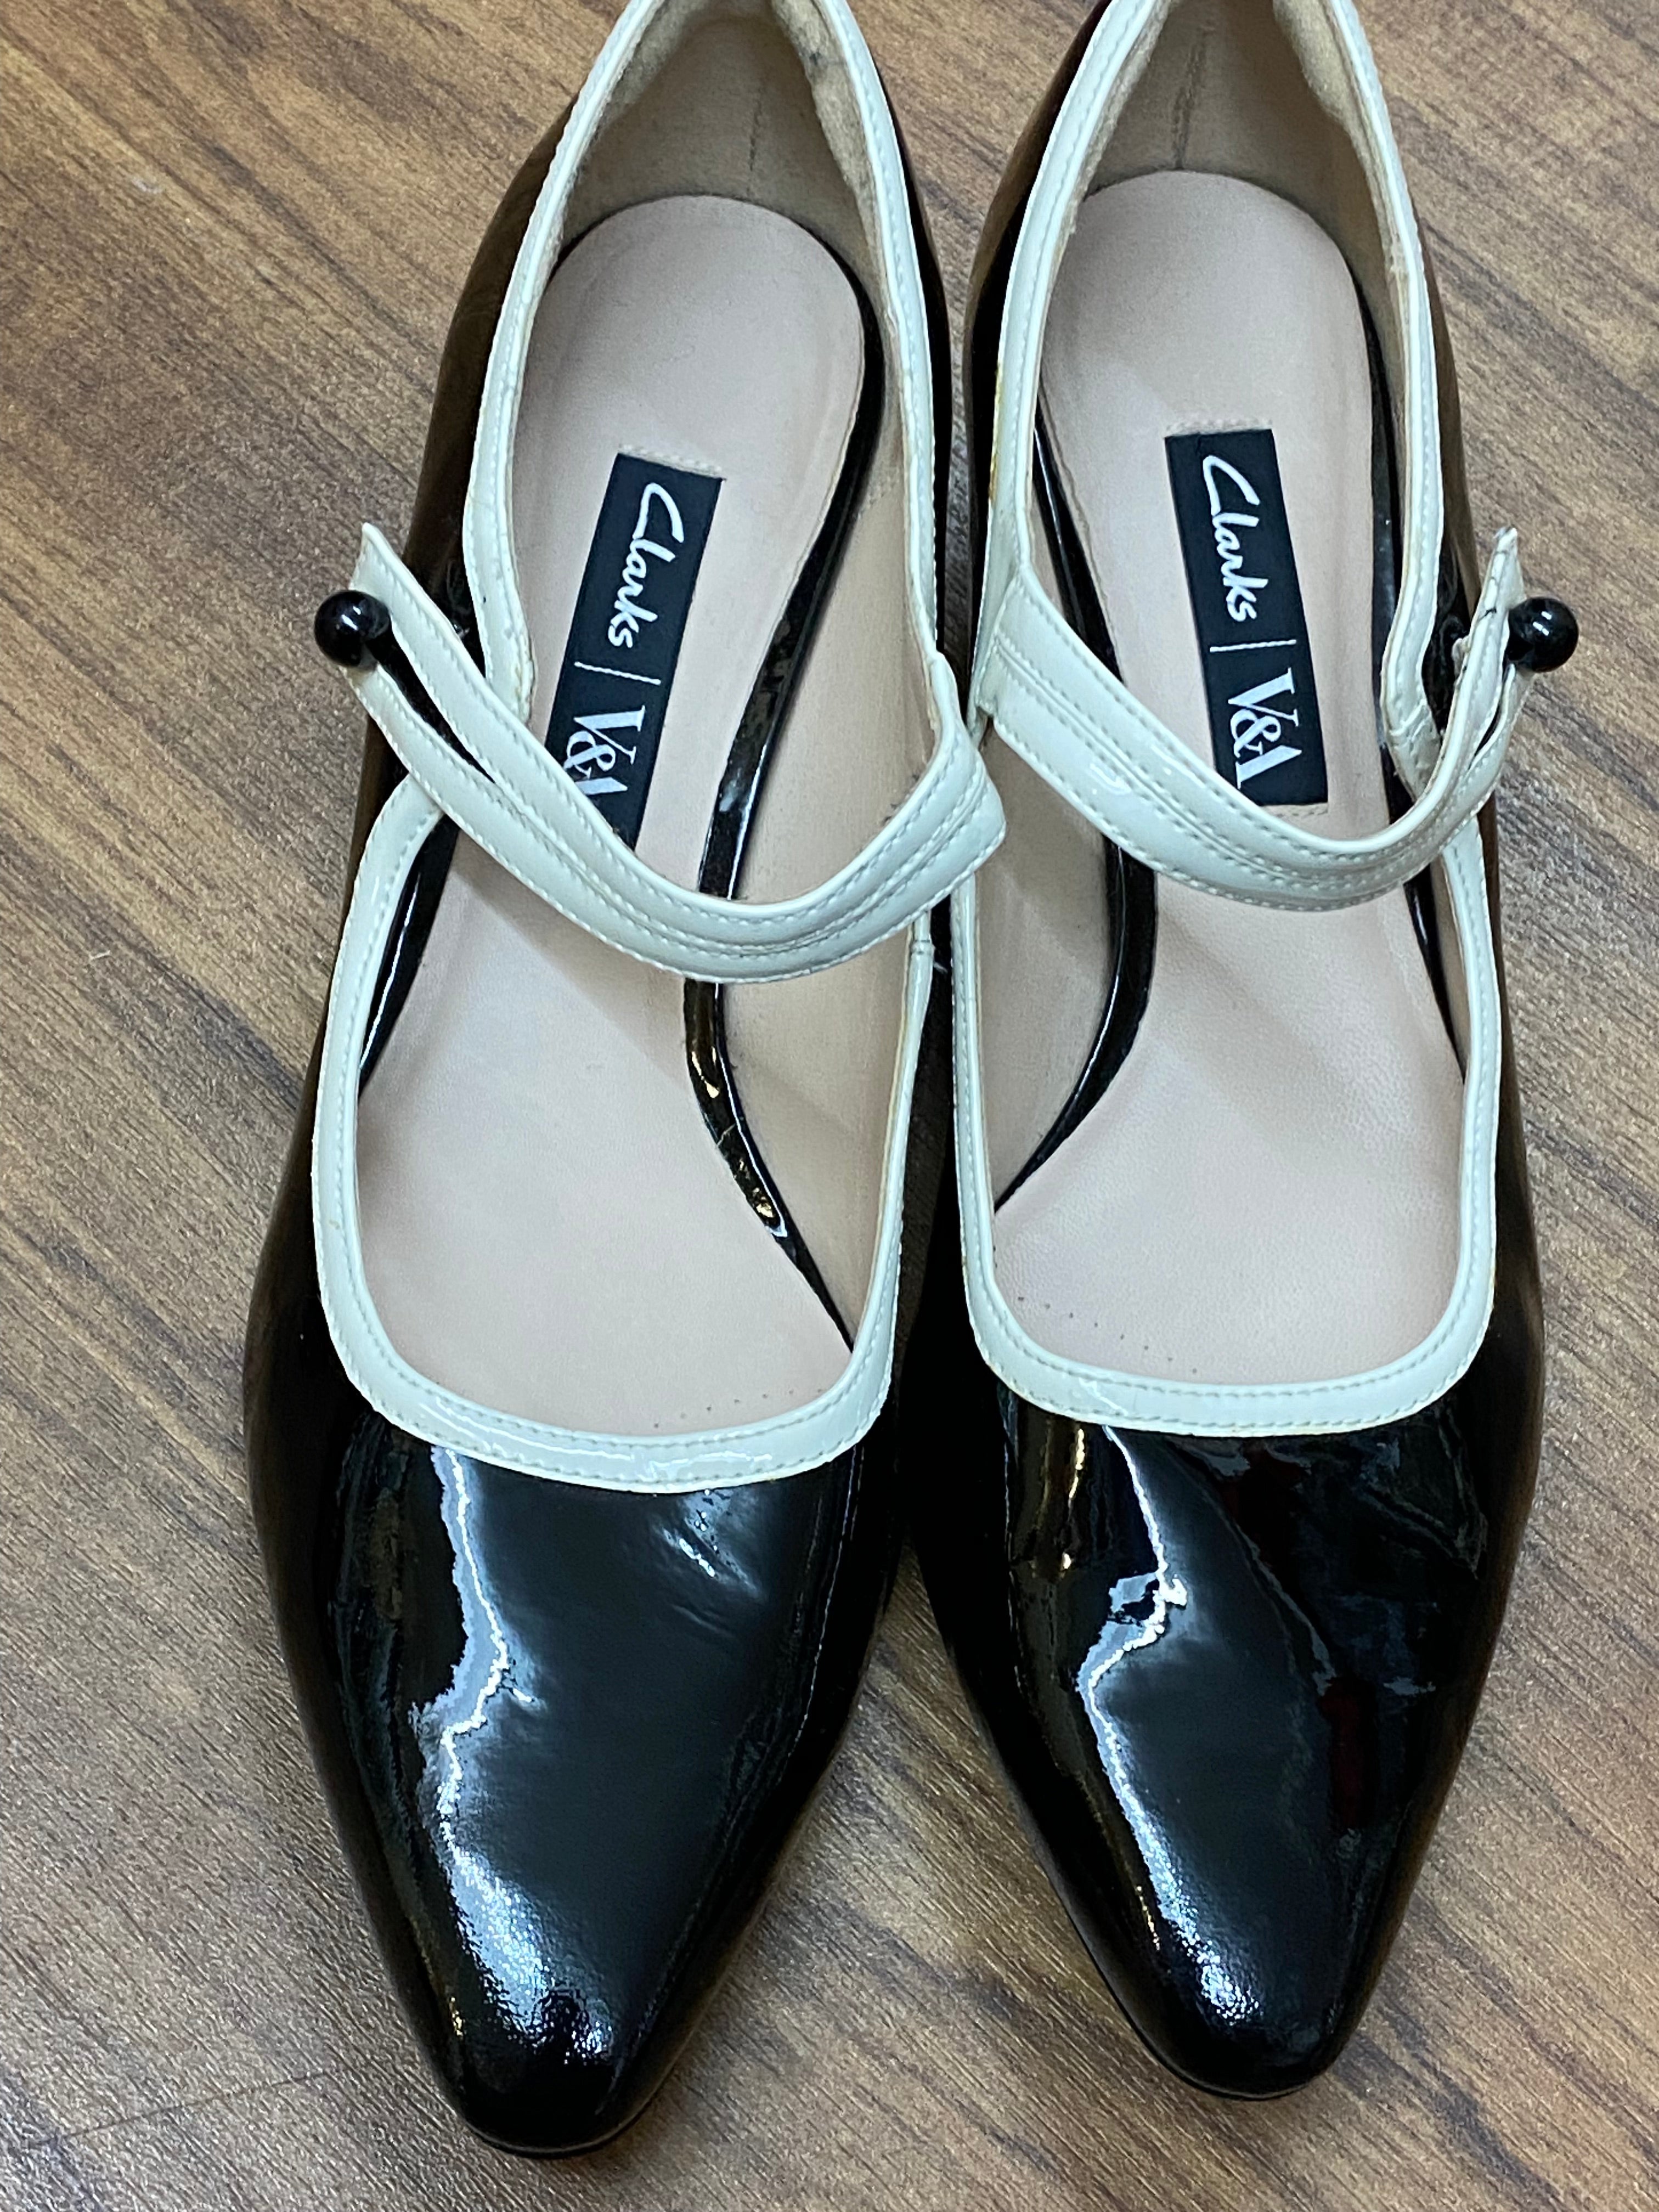 Damen Schuh von Clarks, Lackleder schwarz/weiß Gr.40